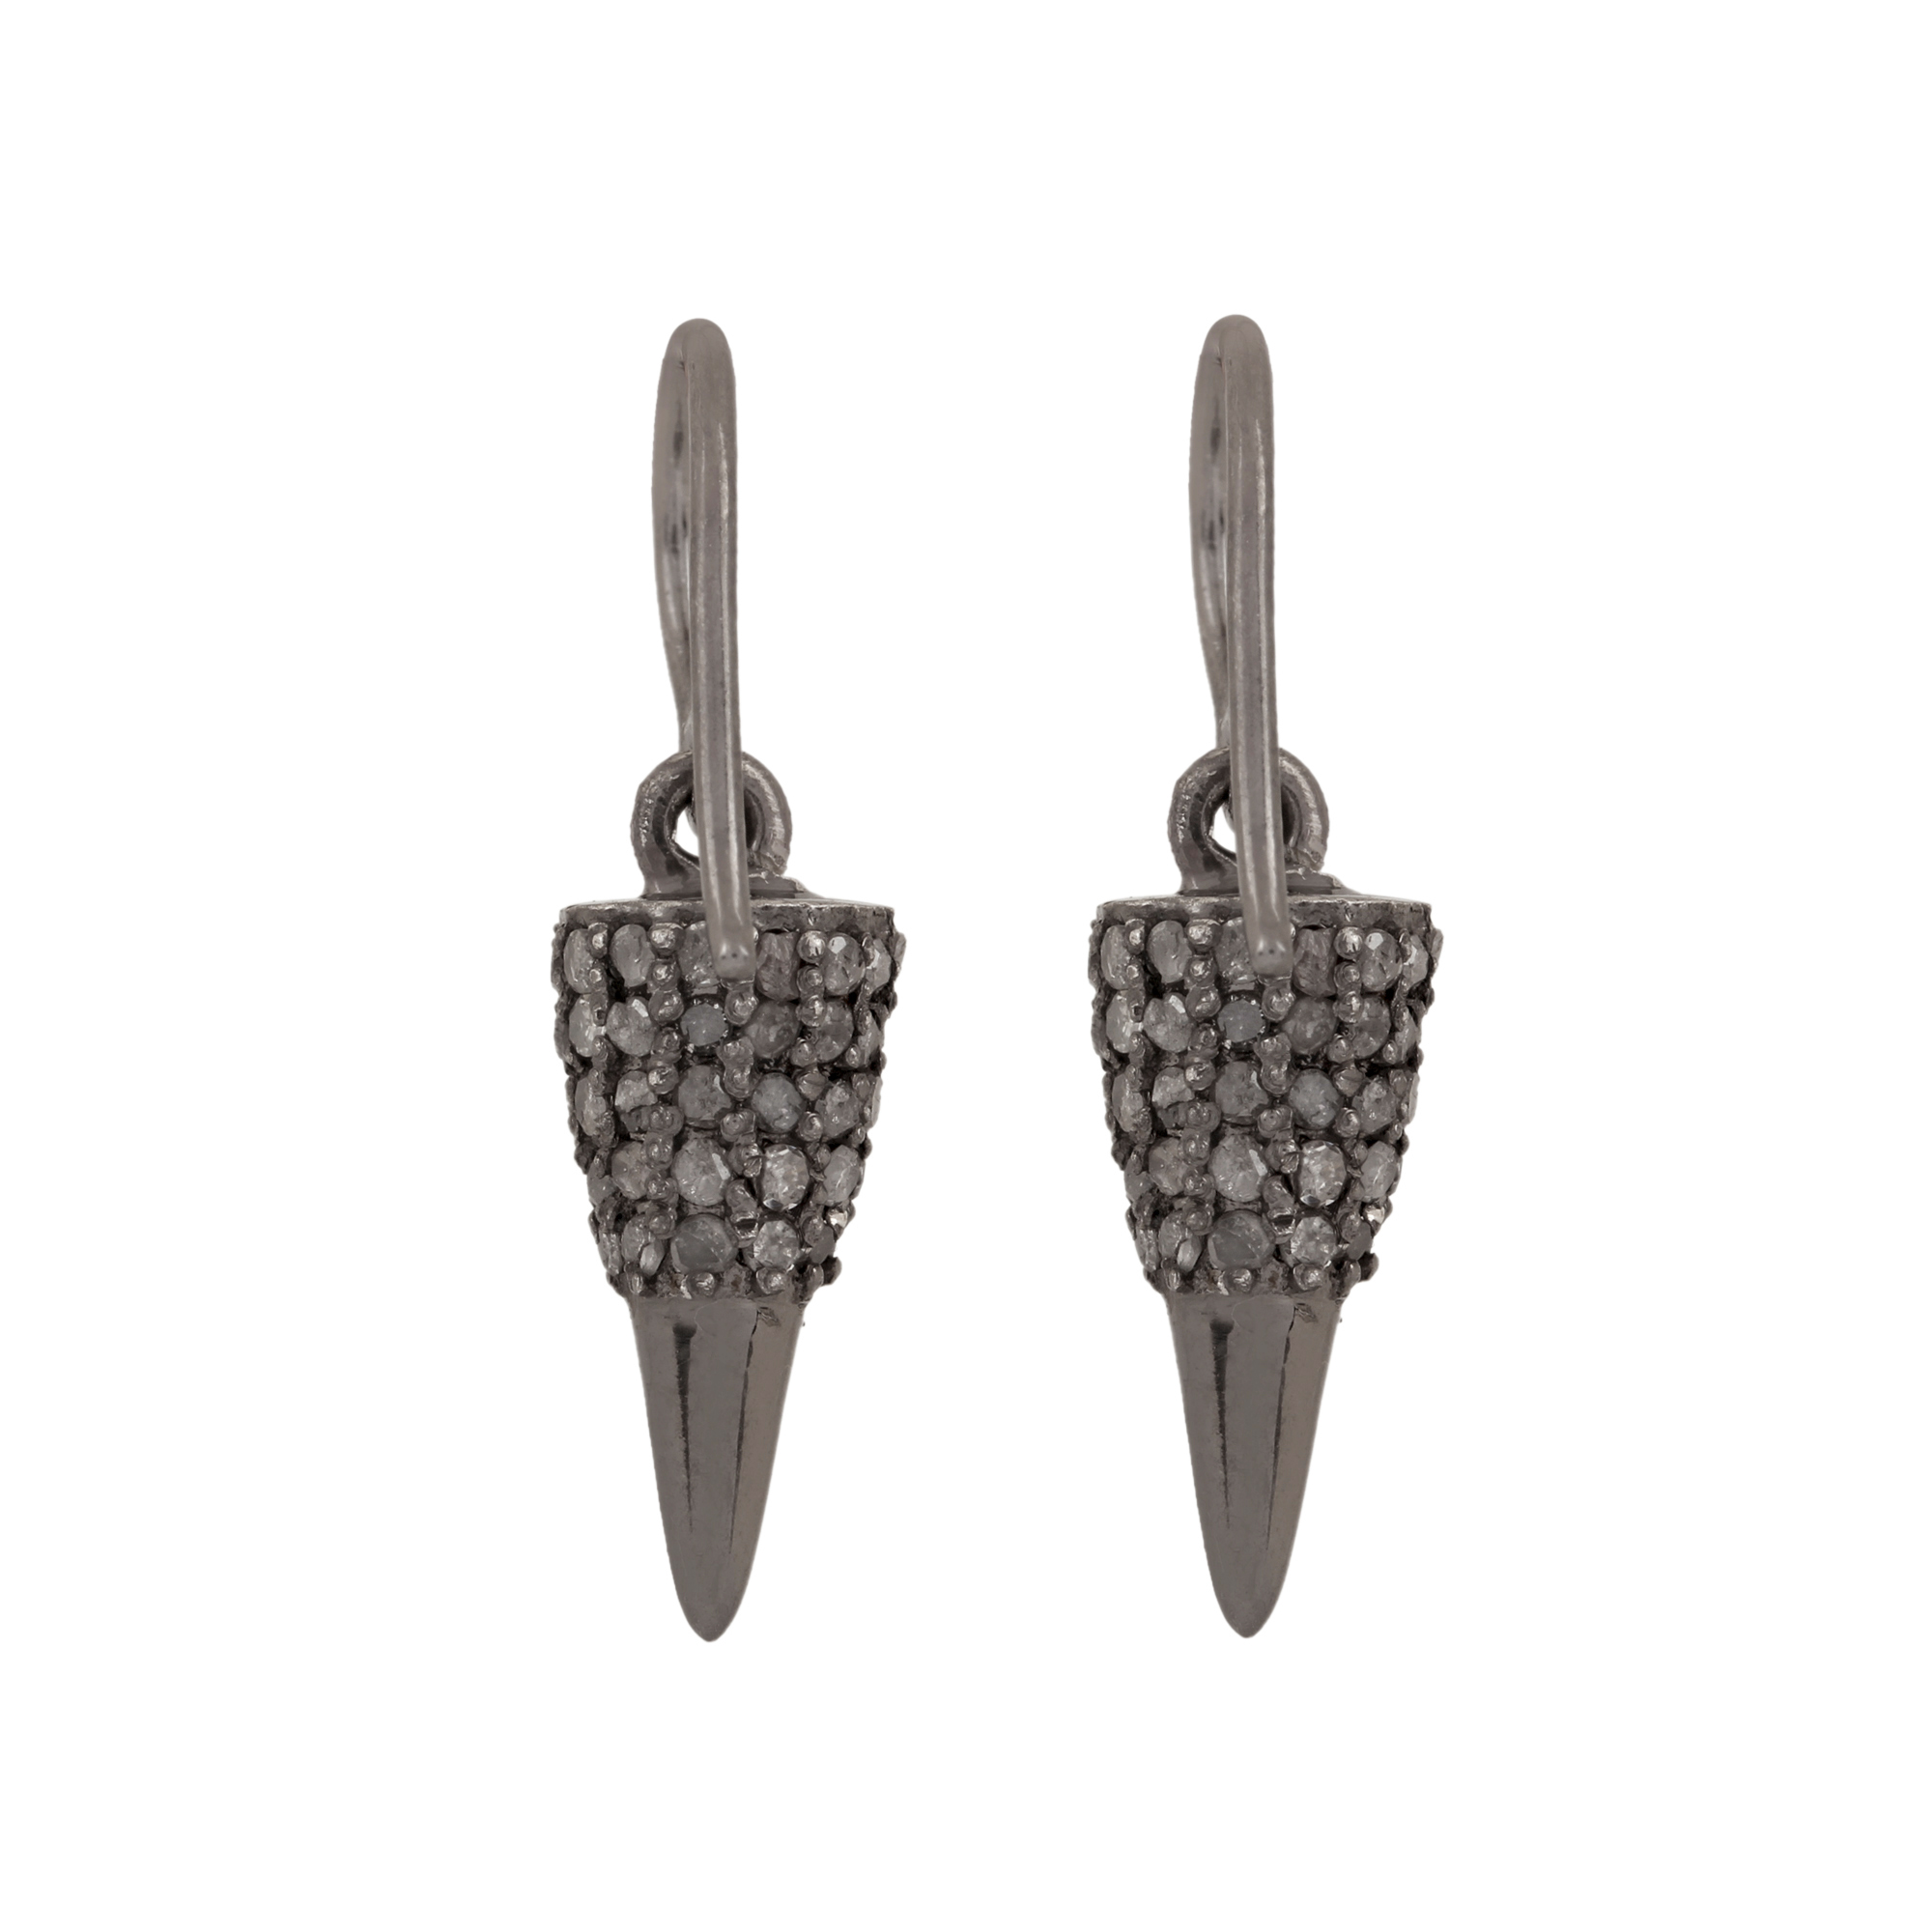 Hook earrings made in 925 strling silver & diamond